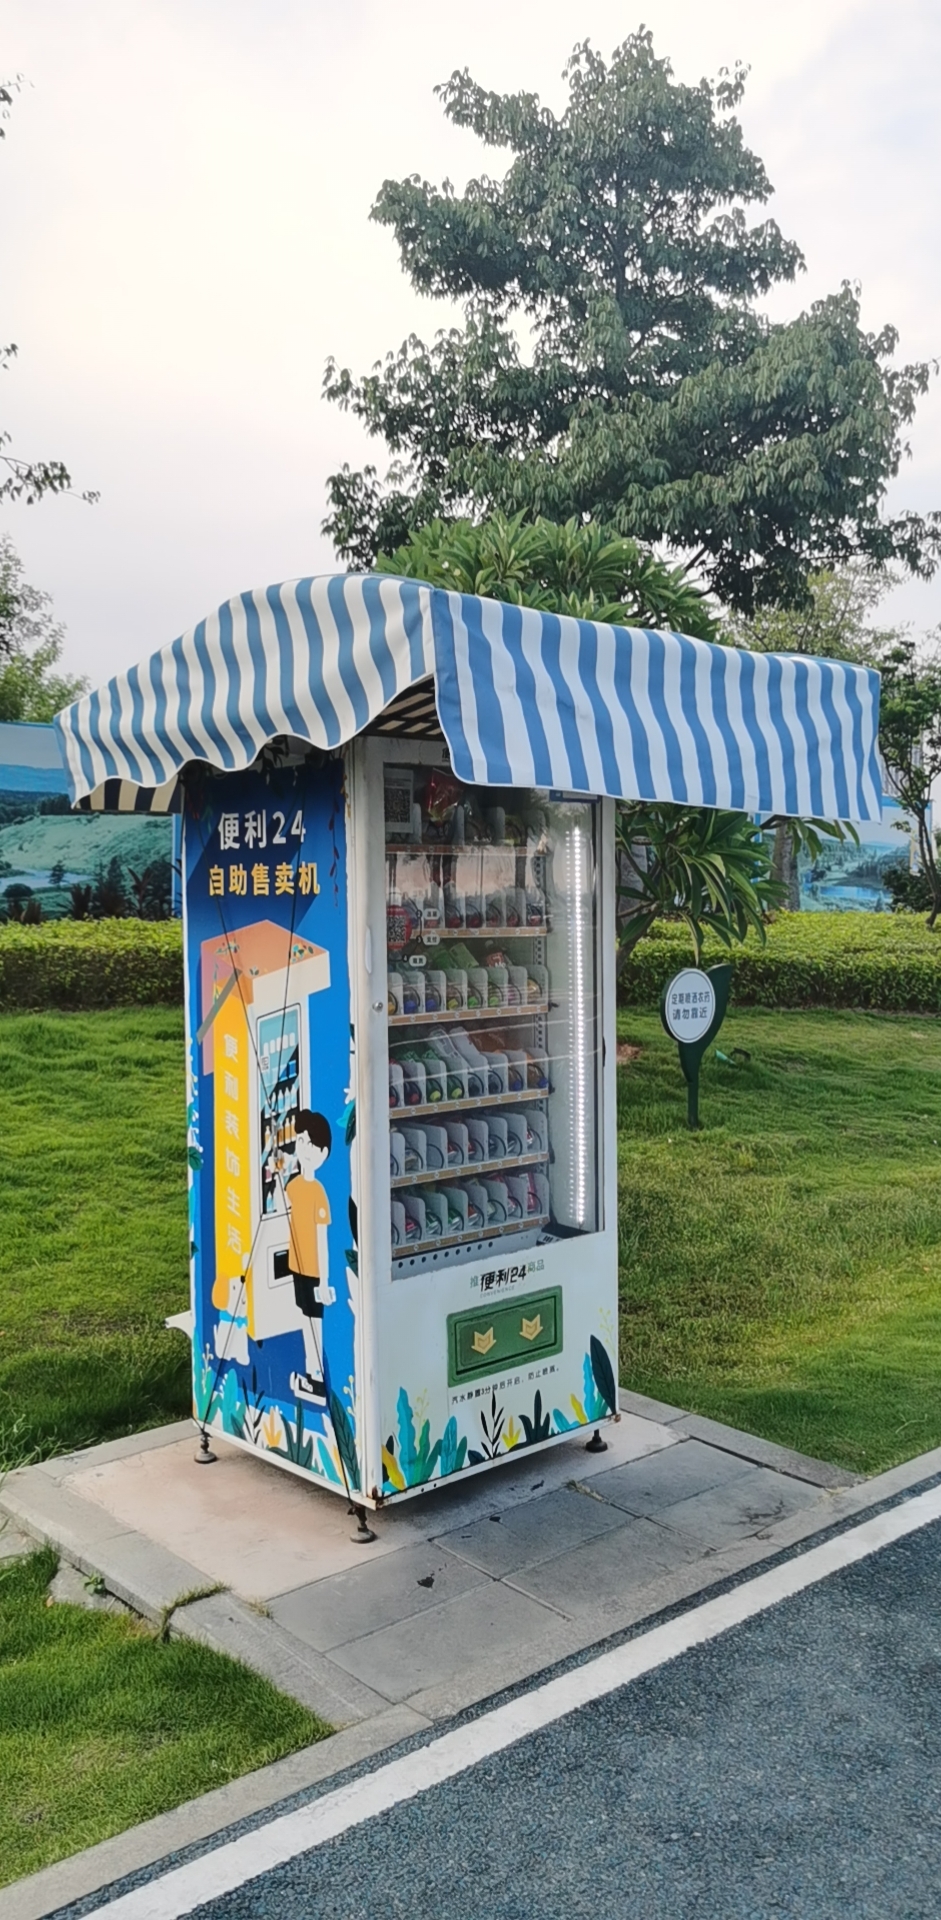 vending machine canopy made from xiamen lichuang umbrella company